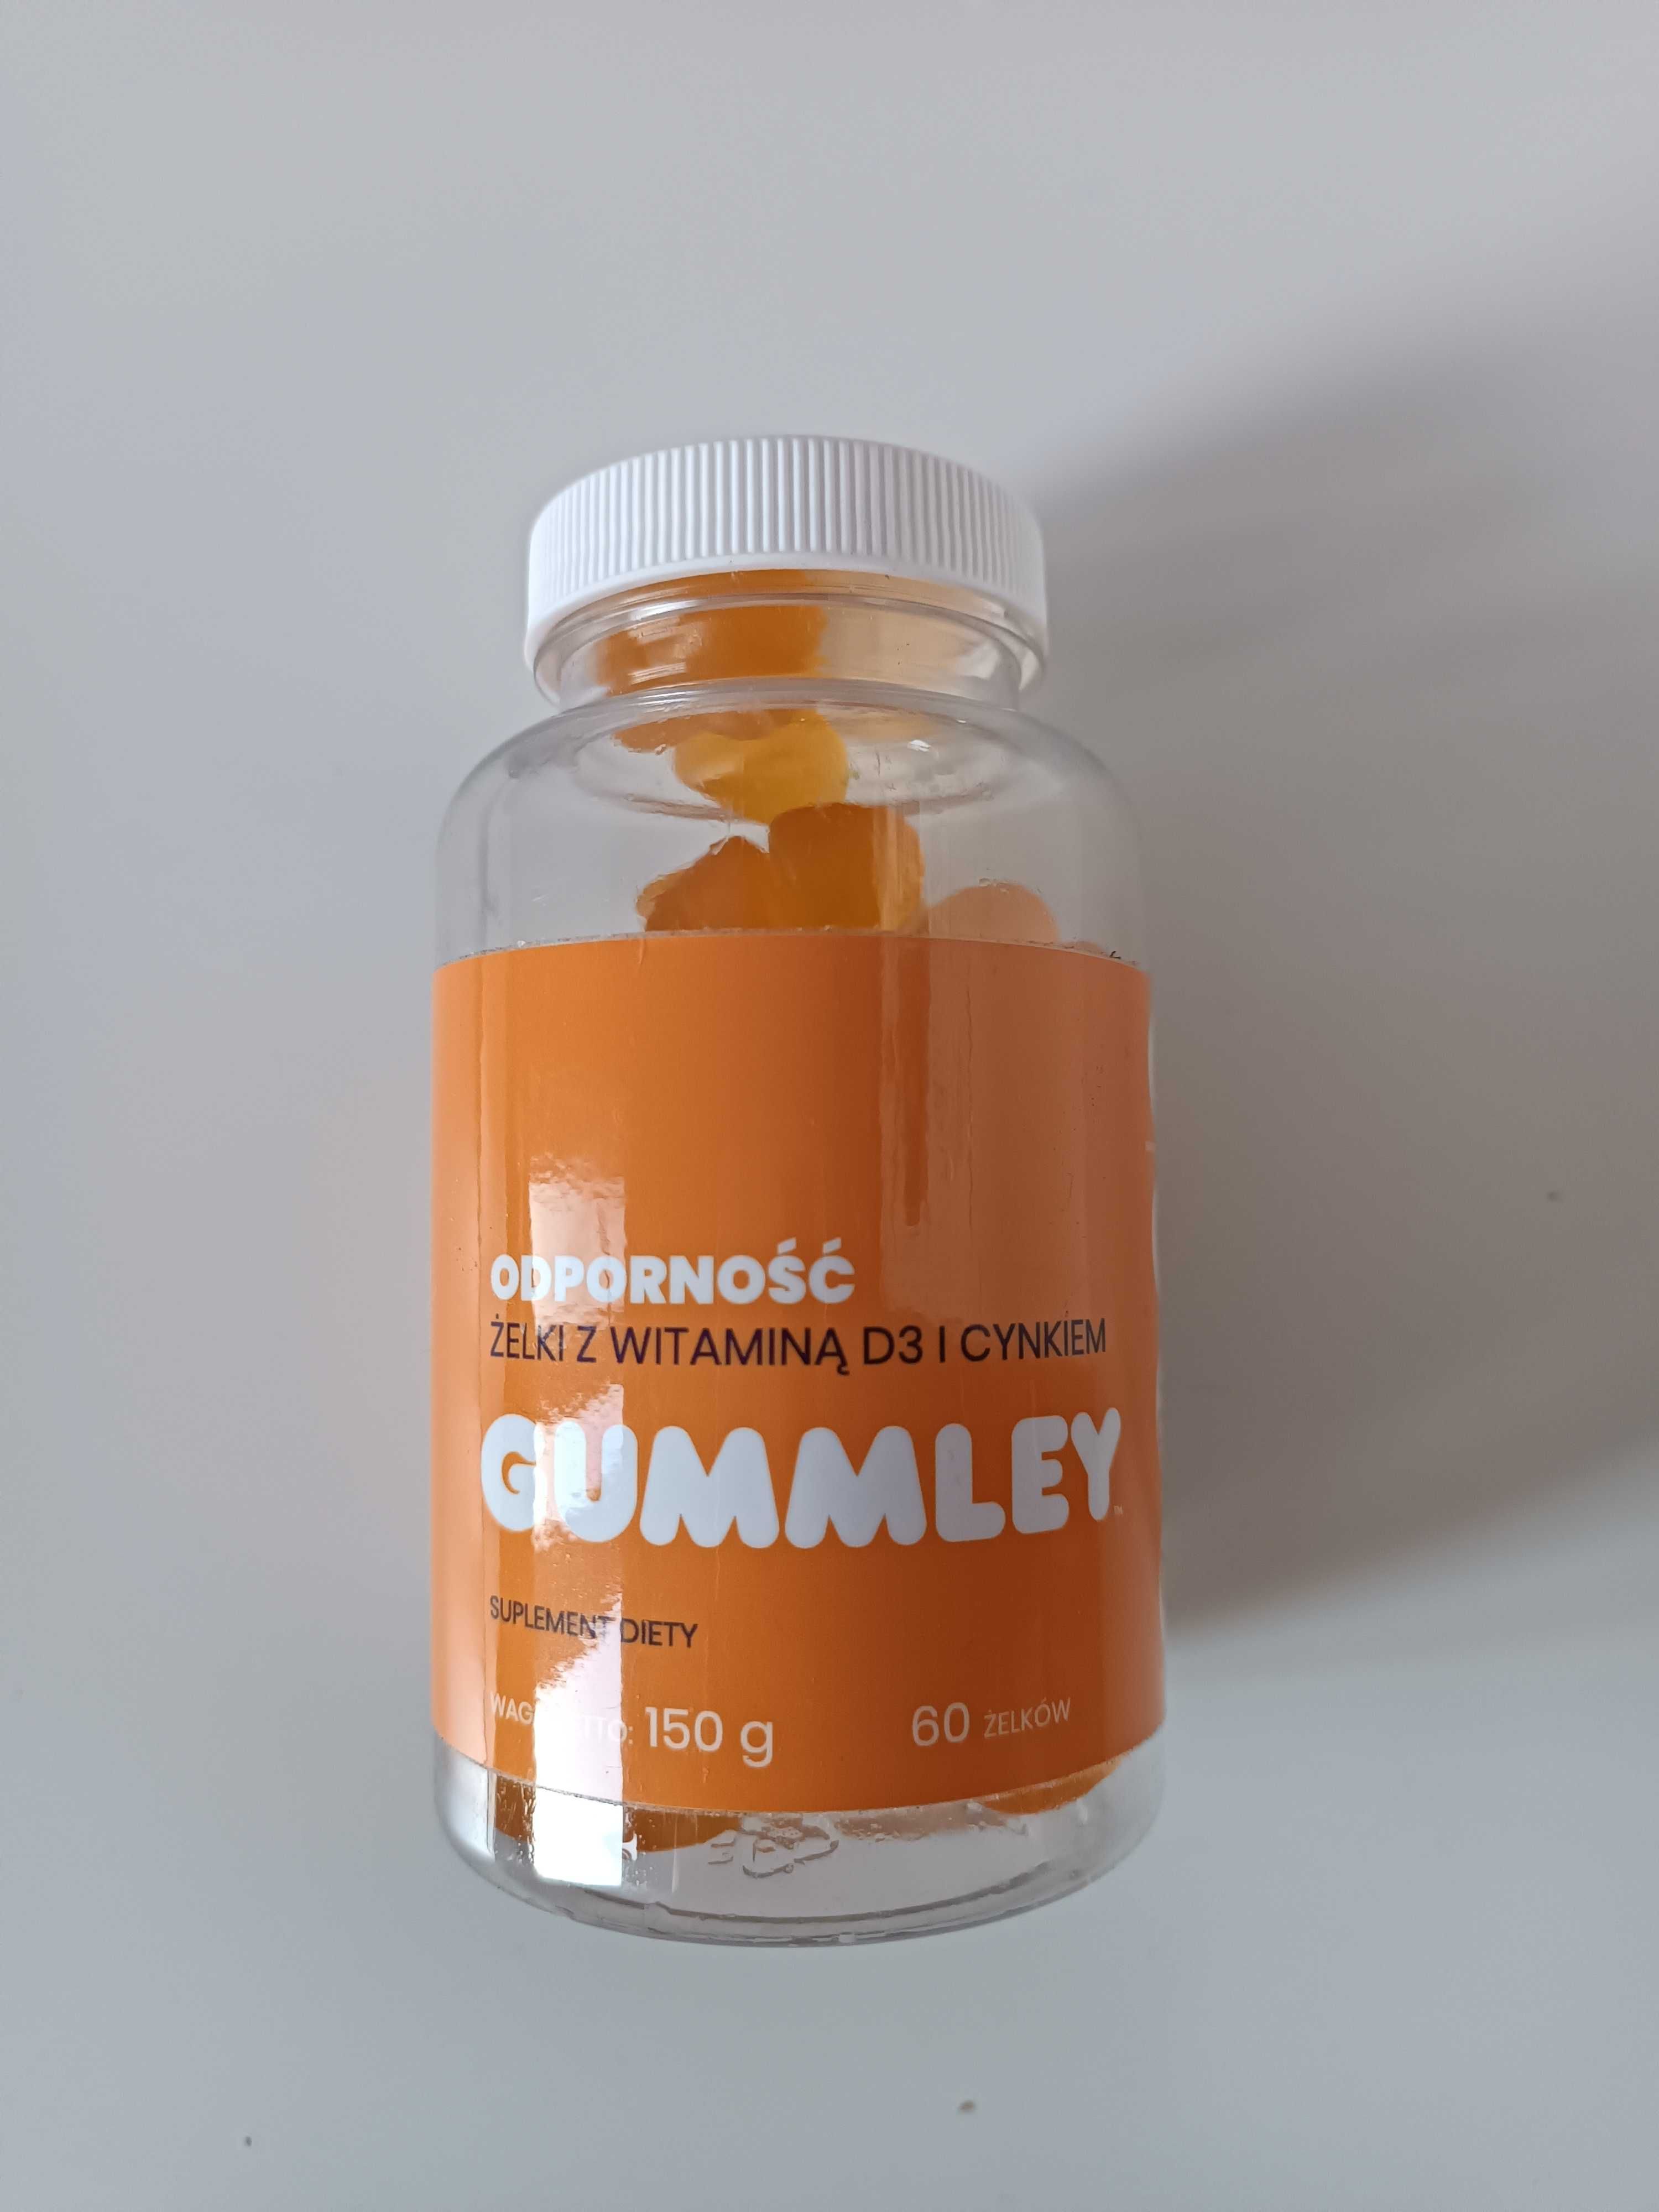 Suplement diety, witaminy w formie żelek Gummley Odporność.